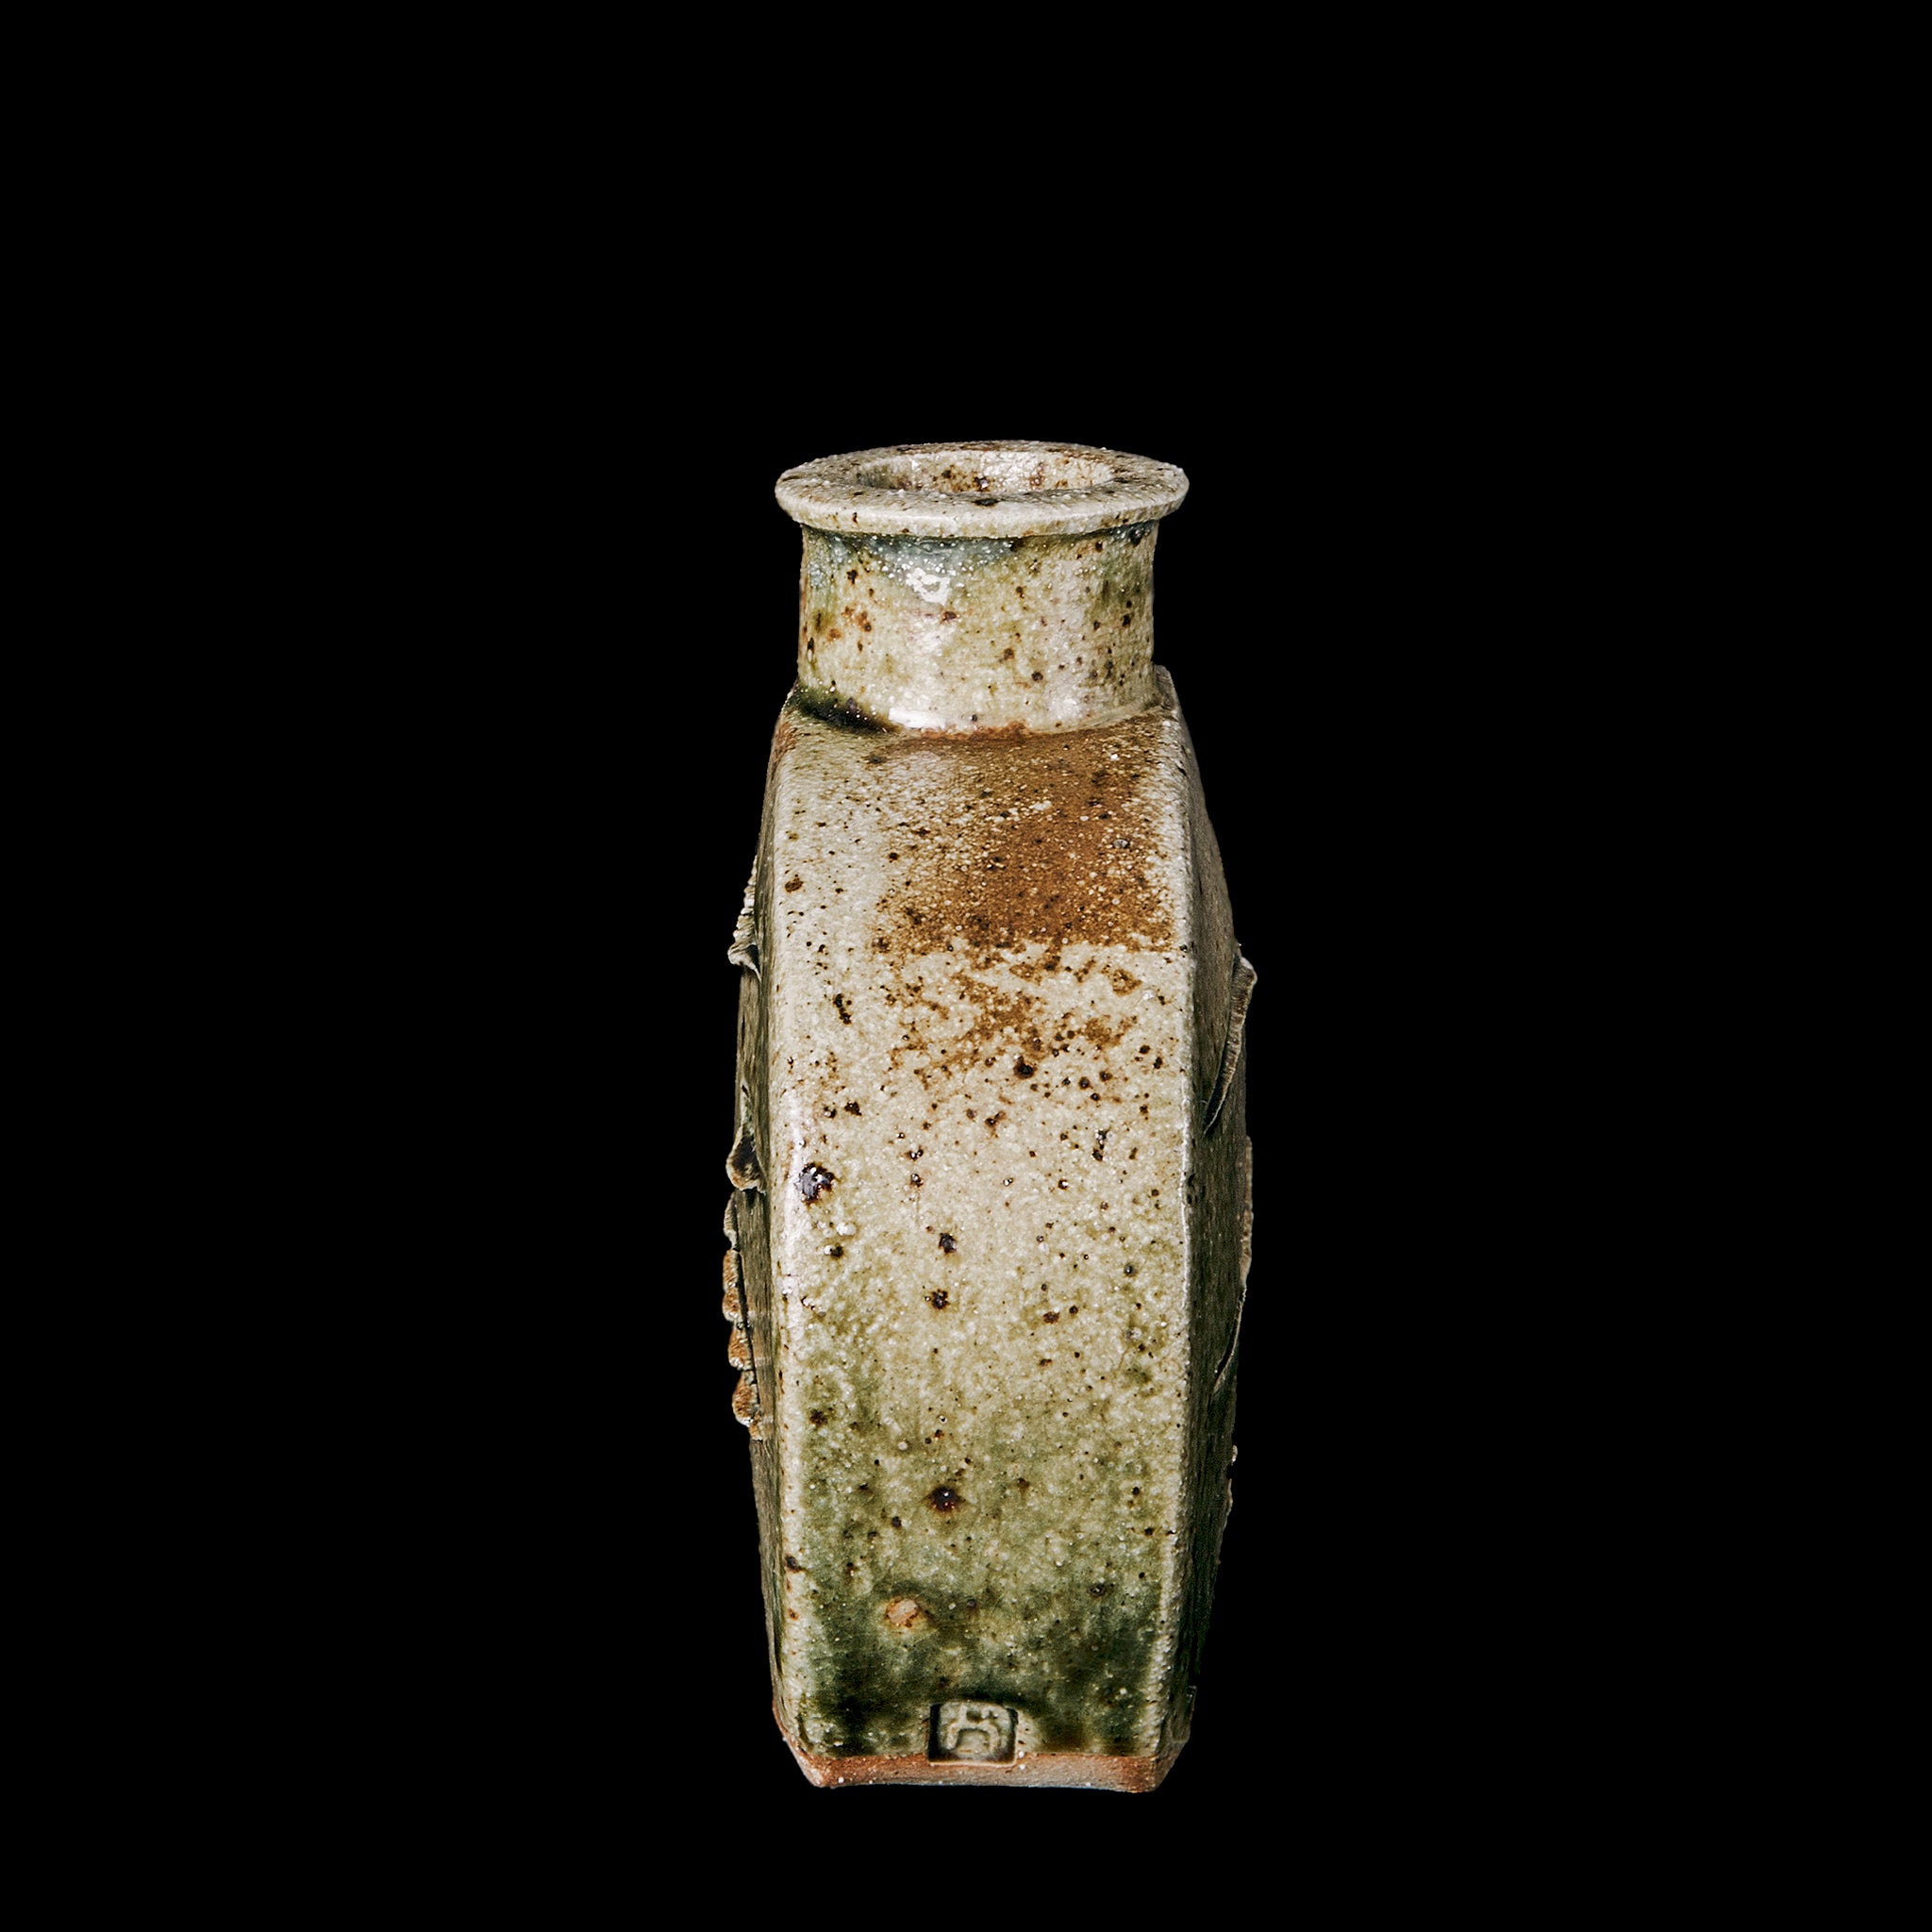 Vase No.125/22